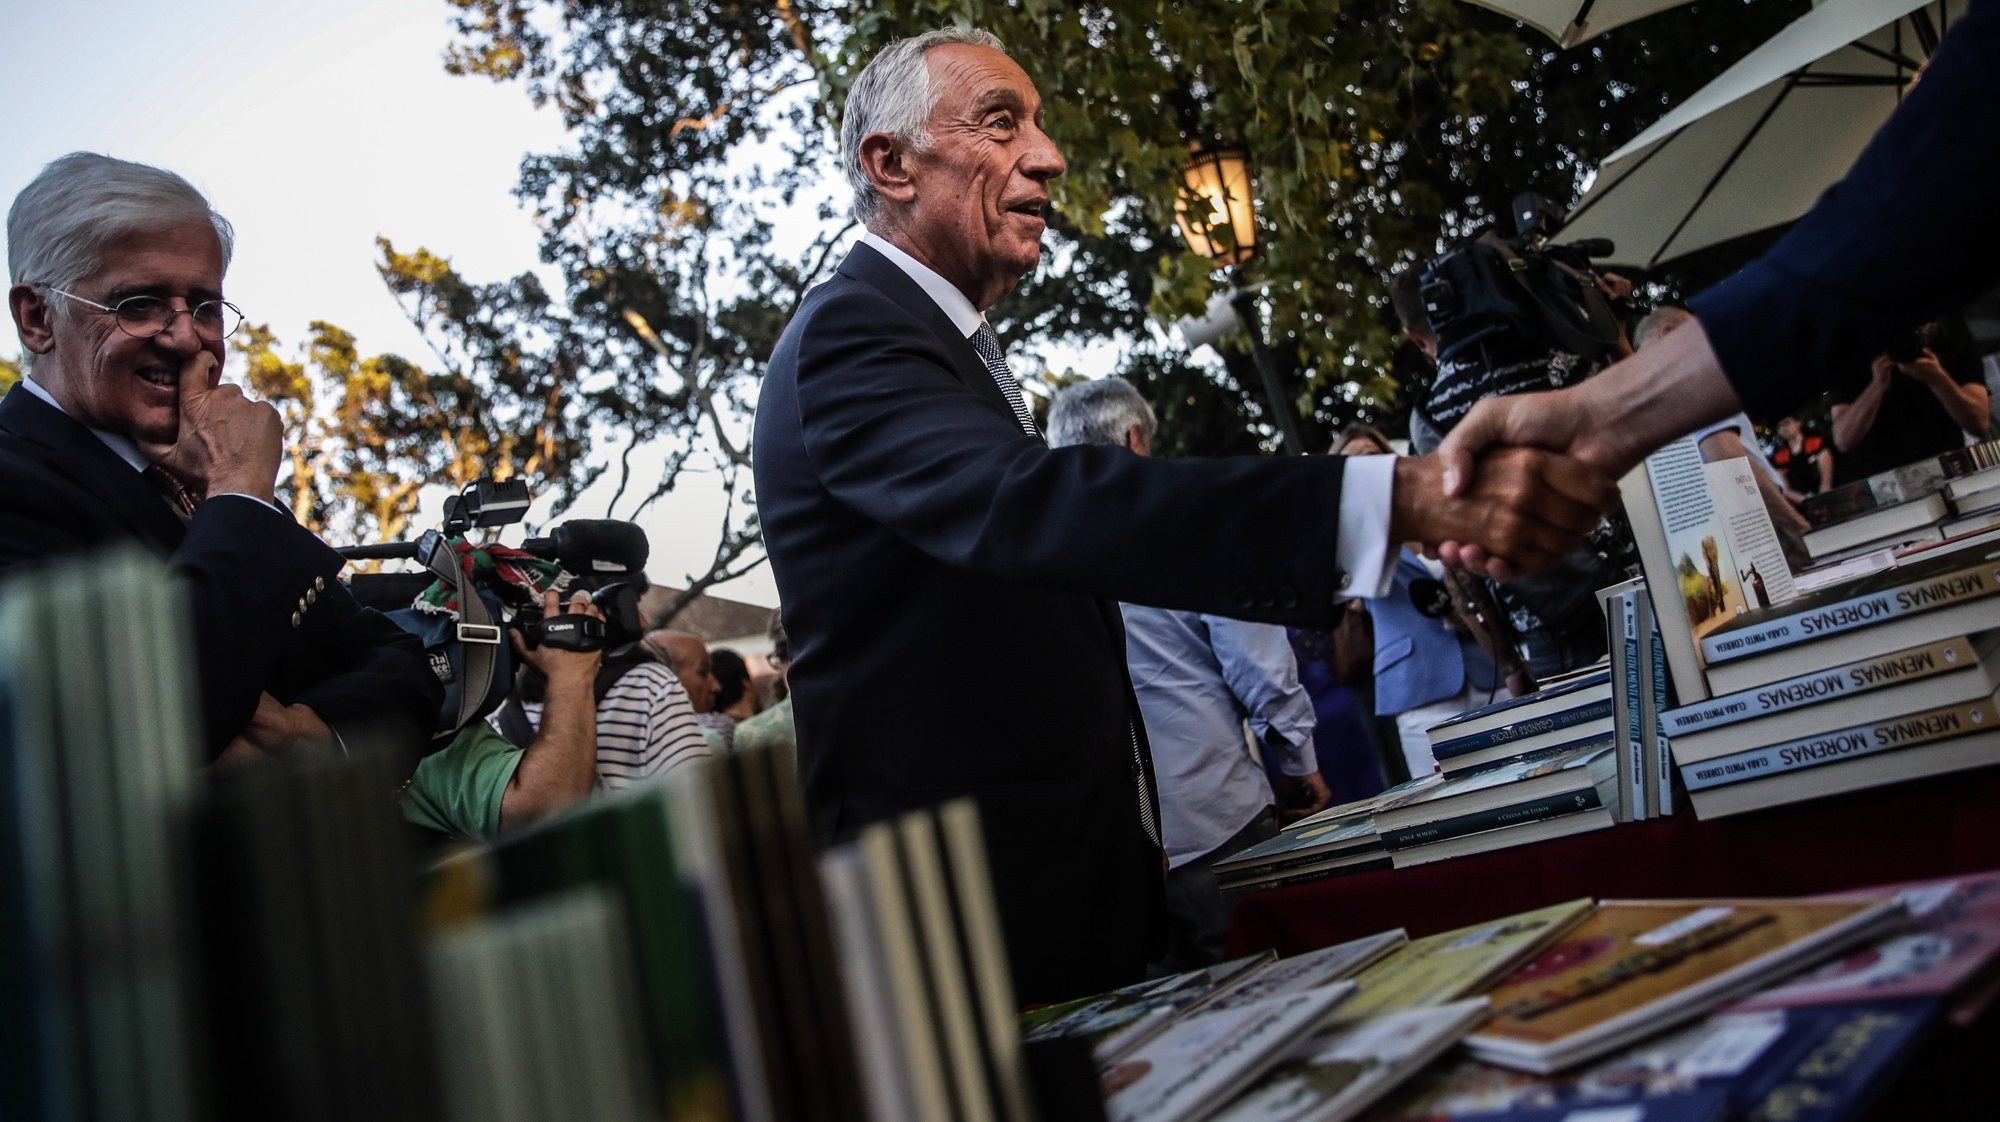 O Presidente da República, Marcelo Rebelo de Sousa, visita a 4.ª edição da Festa do Livro de Belém, no Palácio de Belém, em Lisboa, 29 de agosto de 2019. MÁRIO CRUZ/LUSA